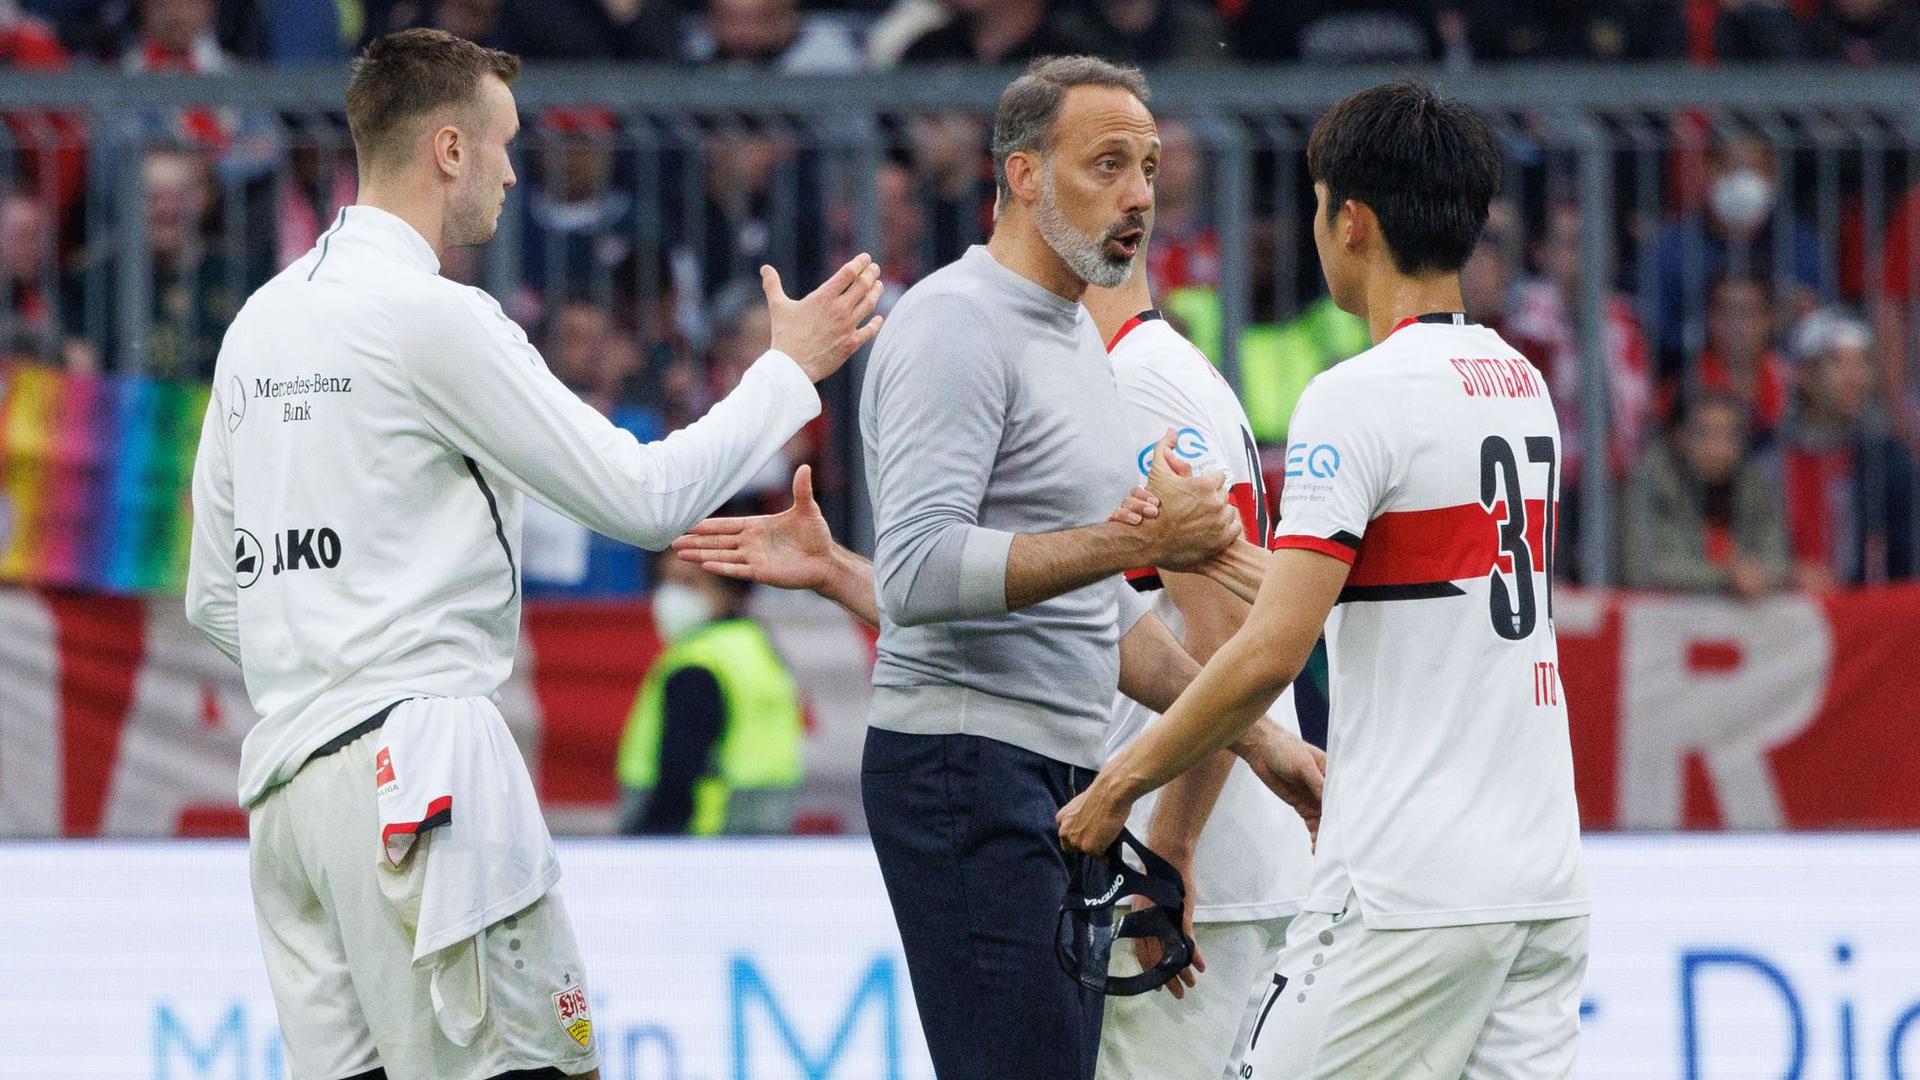 Der VfB Stuttgart muss den 1. FC Köln am letzten Spieltag besiegen, um die Chancen aufrecht zu erhalten Hertha BSC noch von Platz 15 zu verdrängen.